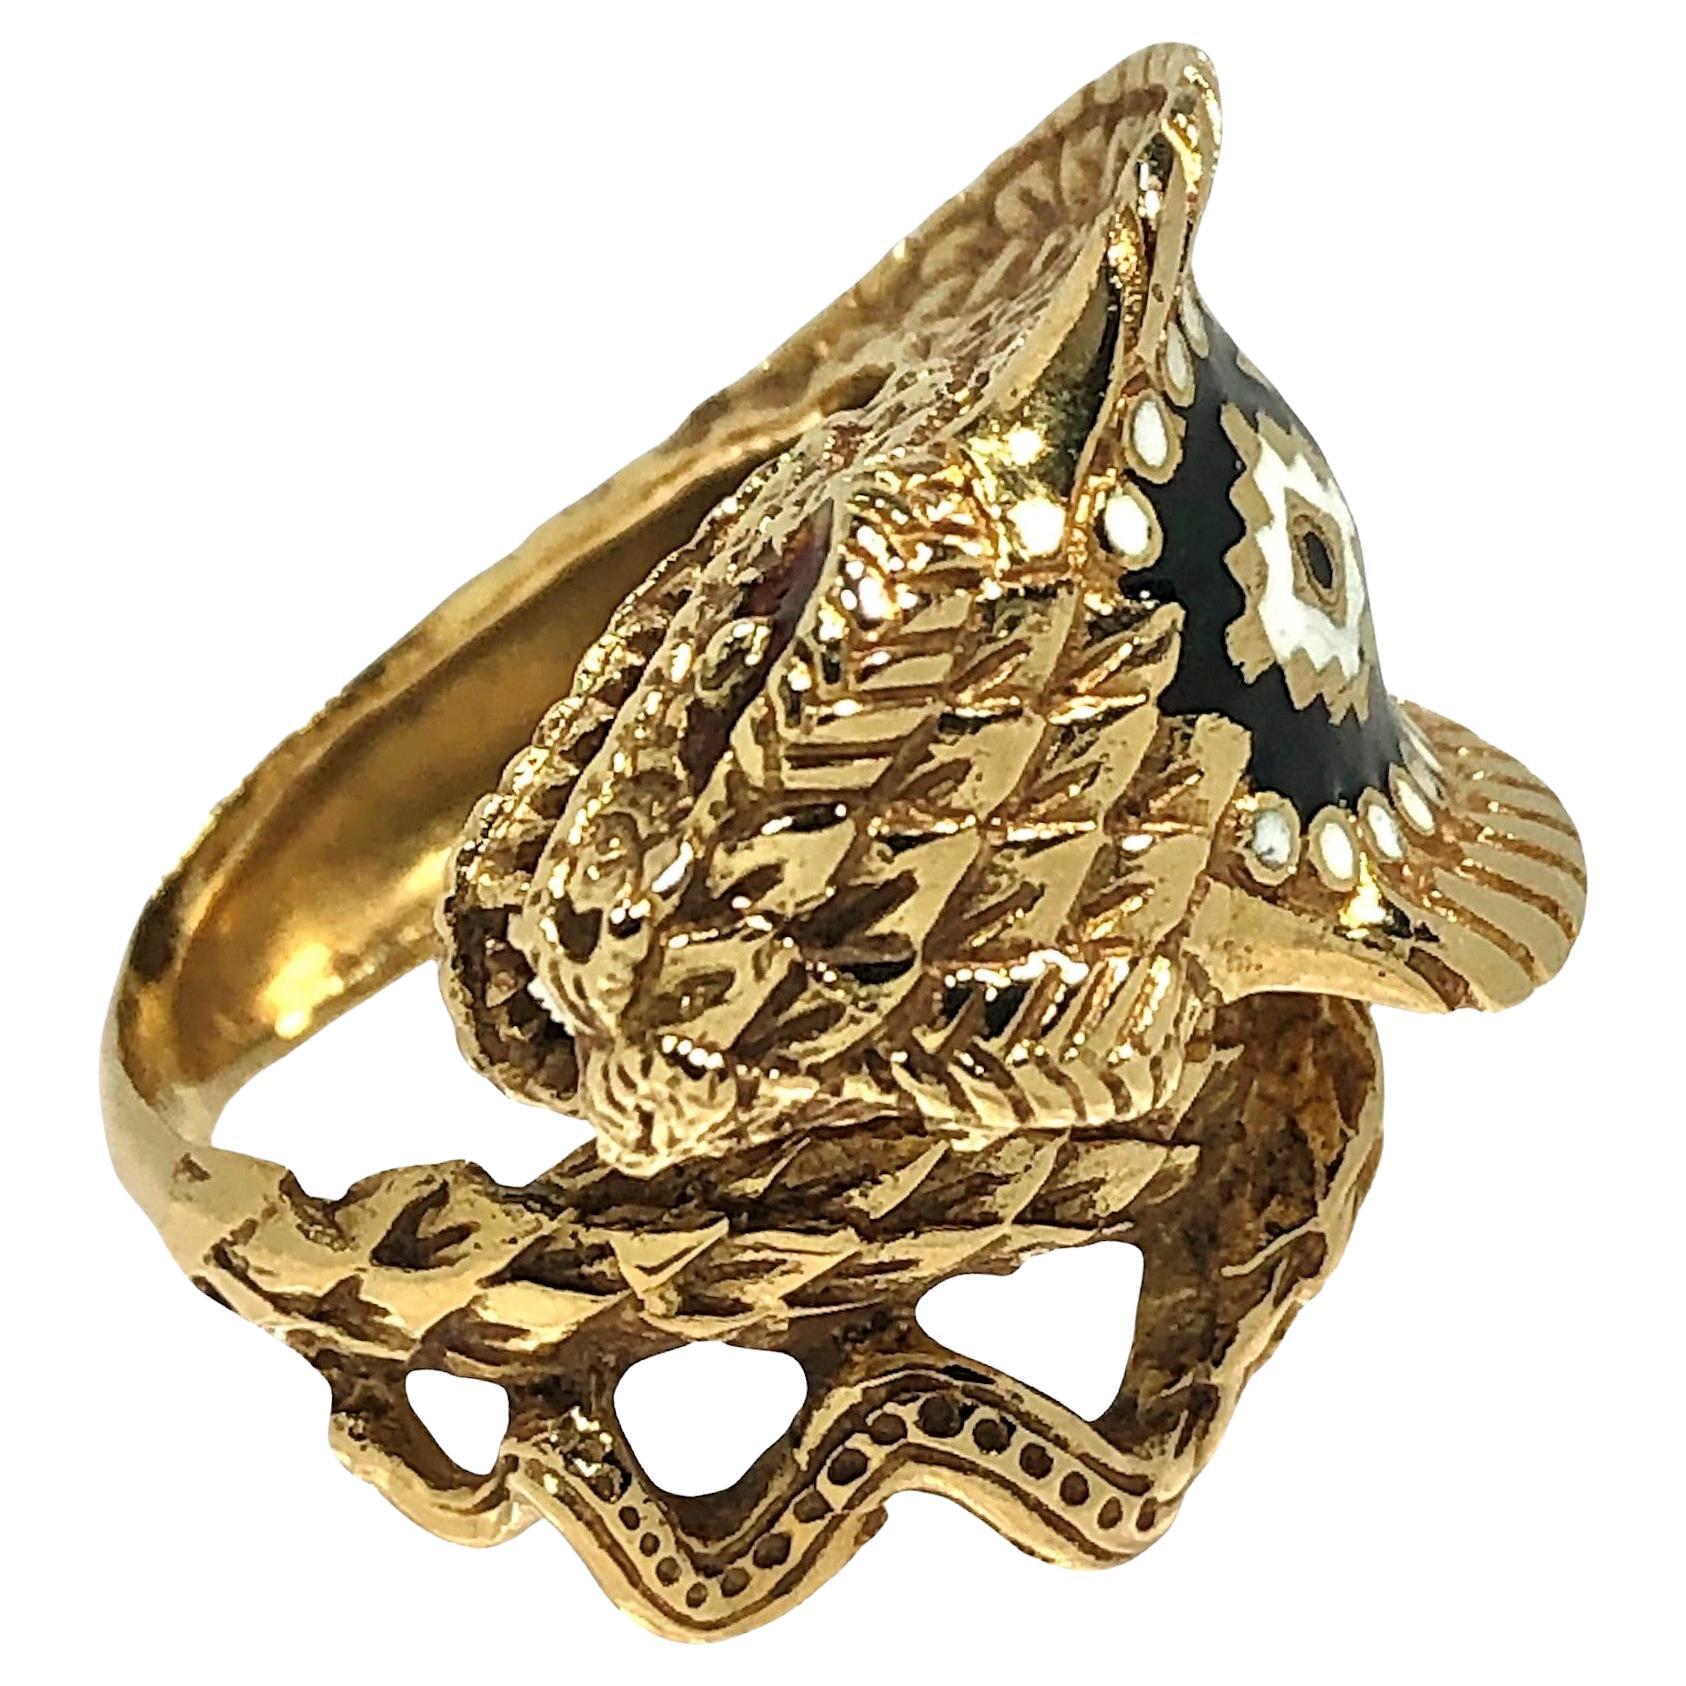 Dieser authentische und bedrohlich aussehende Kobra-Ring ist aus 18 Karat Gelbgold gefertigt und über seine gesamte Oberfläche mit viel Liebe zum Detail gestaltet.  ist mit schwarzer, weißer und preiselbeerfarbener Emaille akzentuiert. Misst 3/4